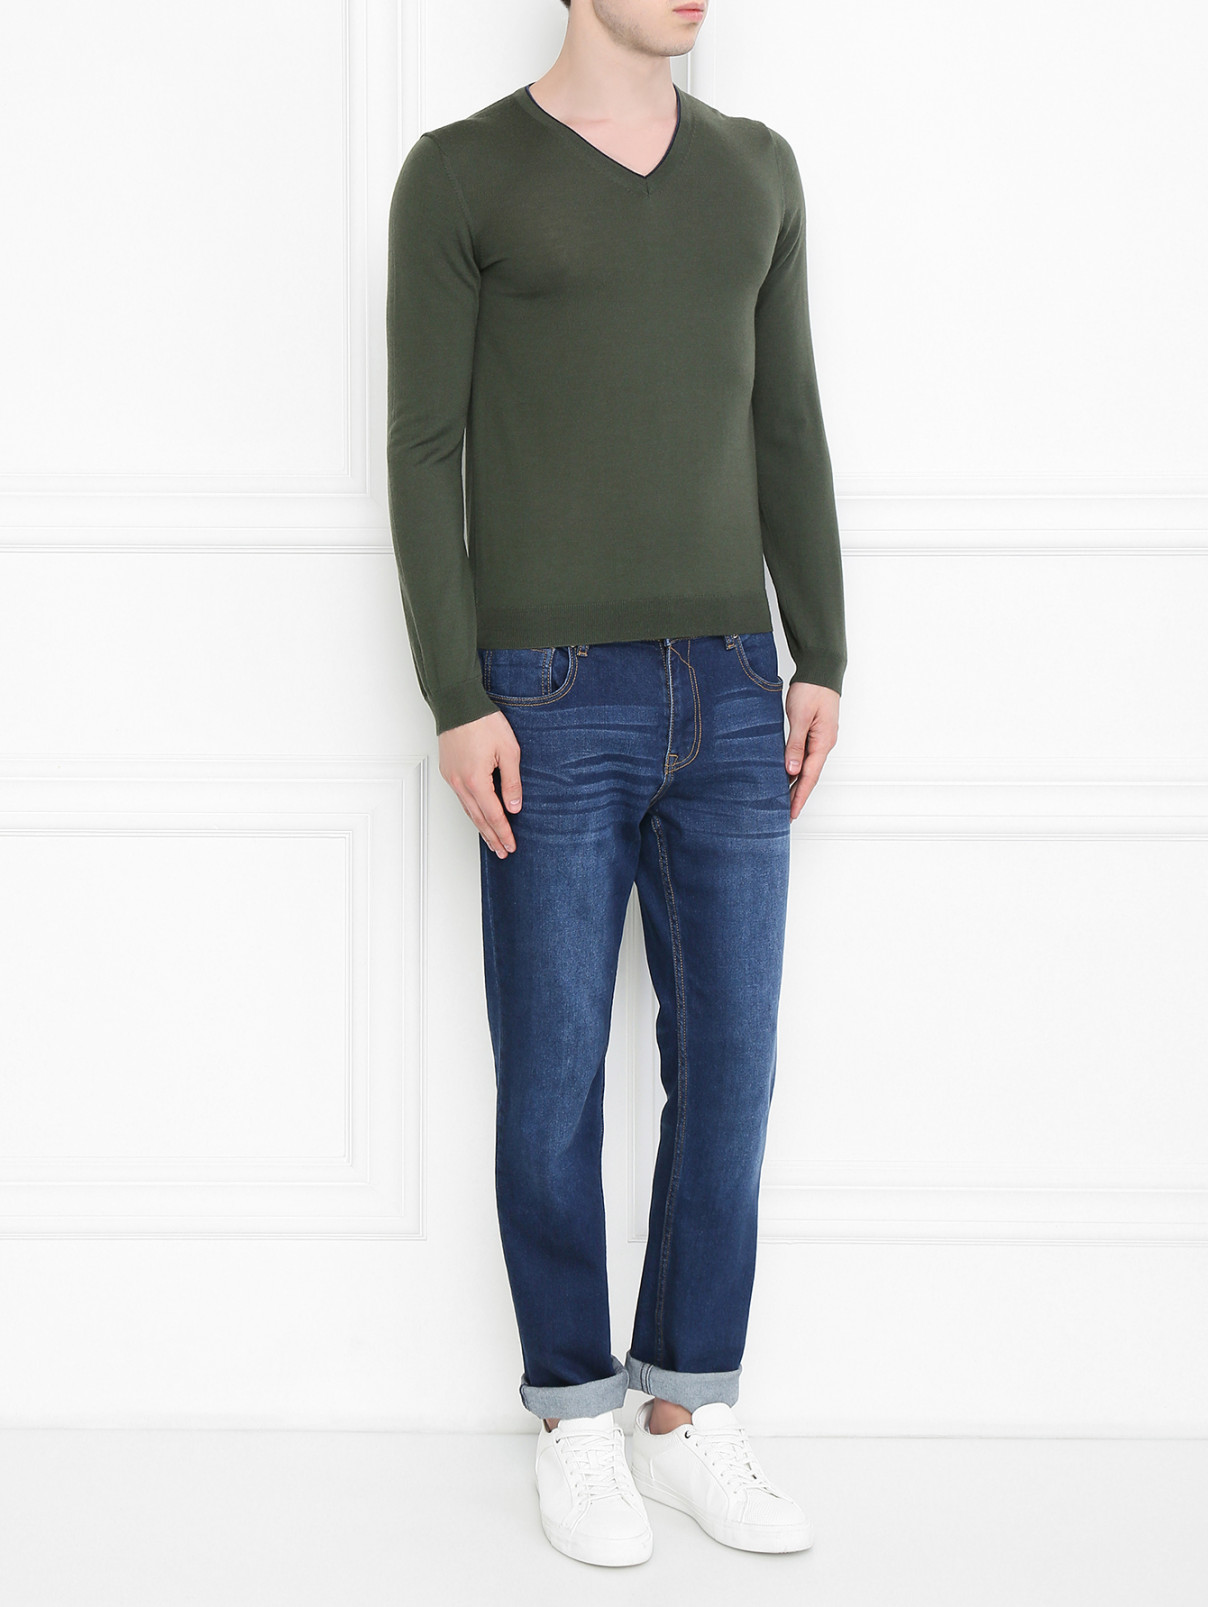 Пуловер из шерсти Pal Zileri  –  Модель Общий вид  – Цвет:  Зеленый